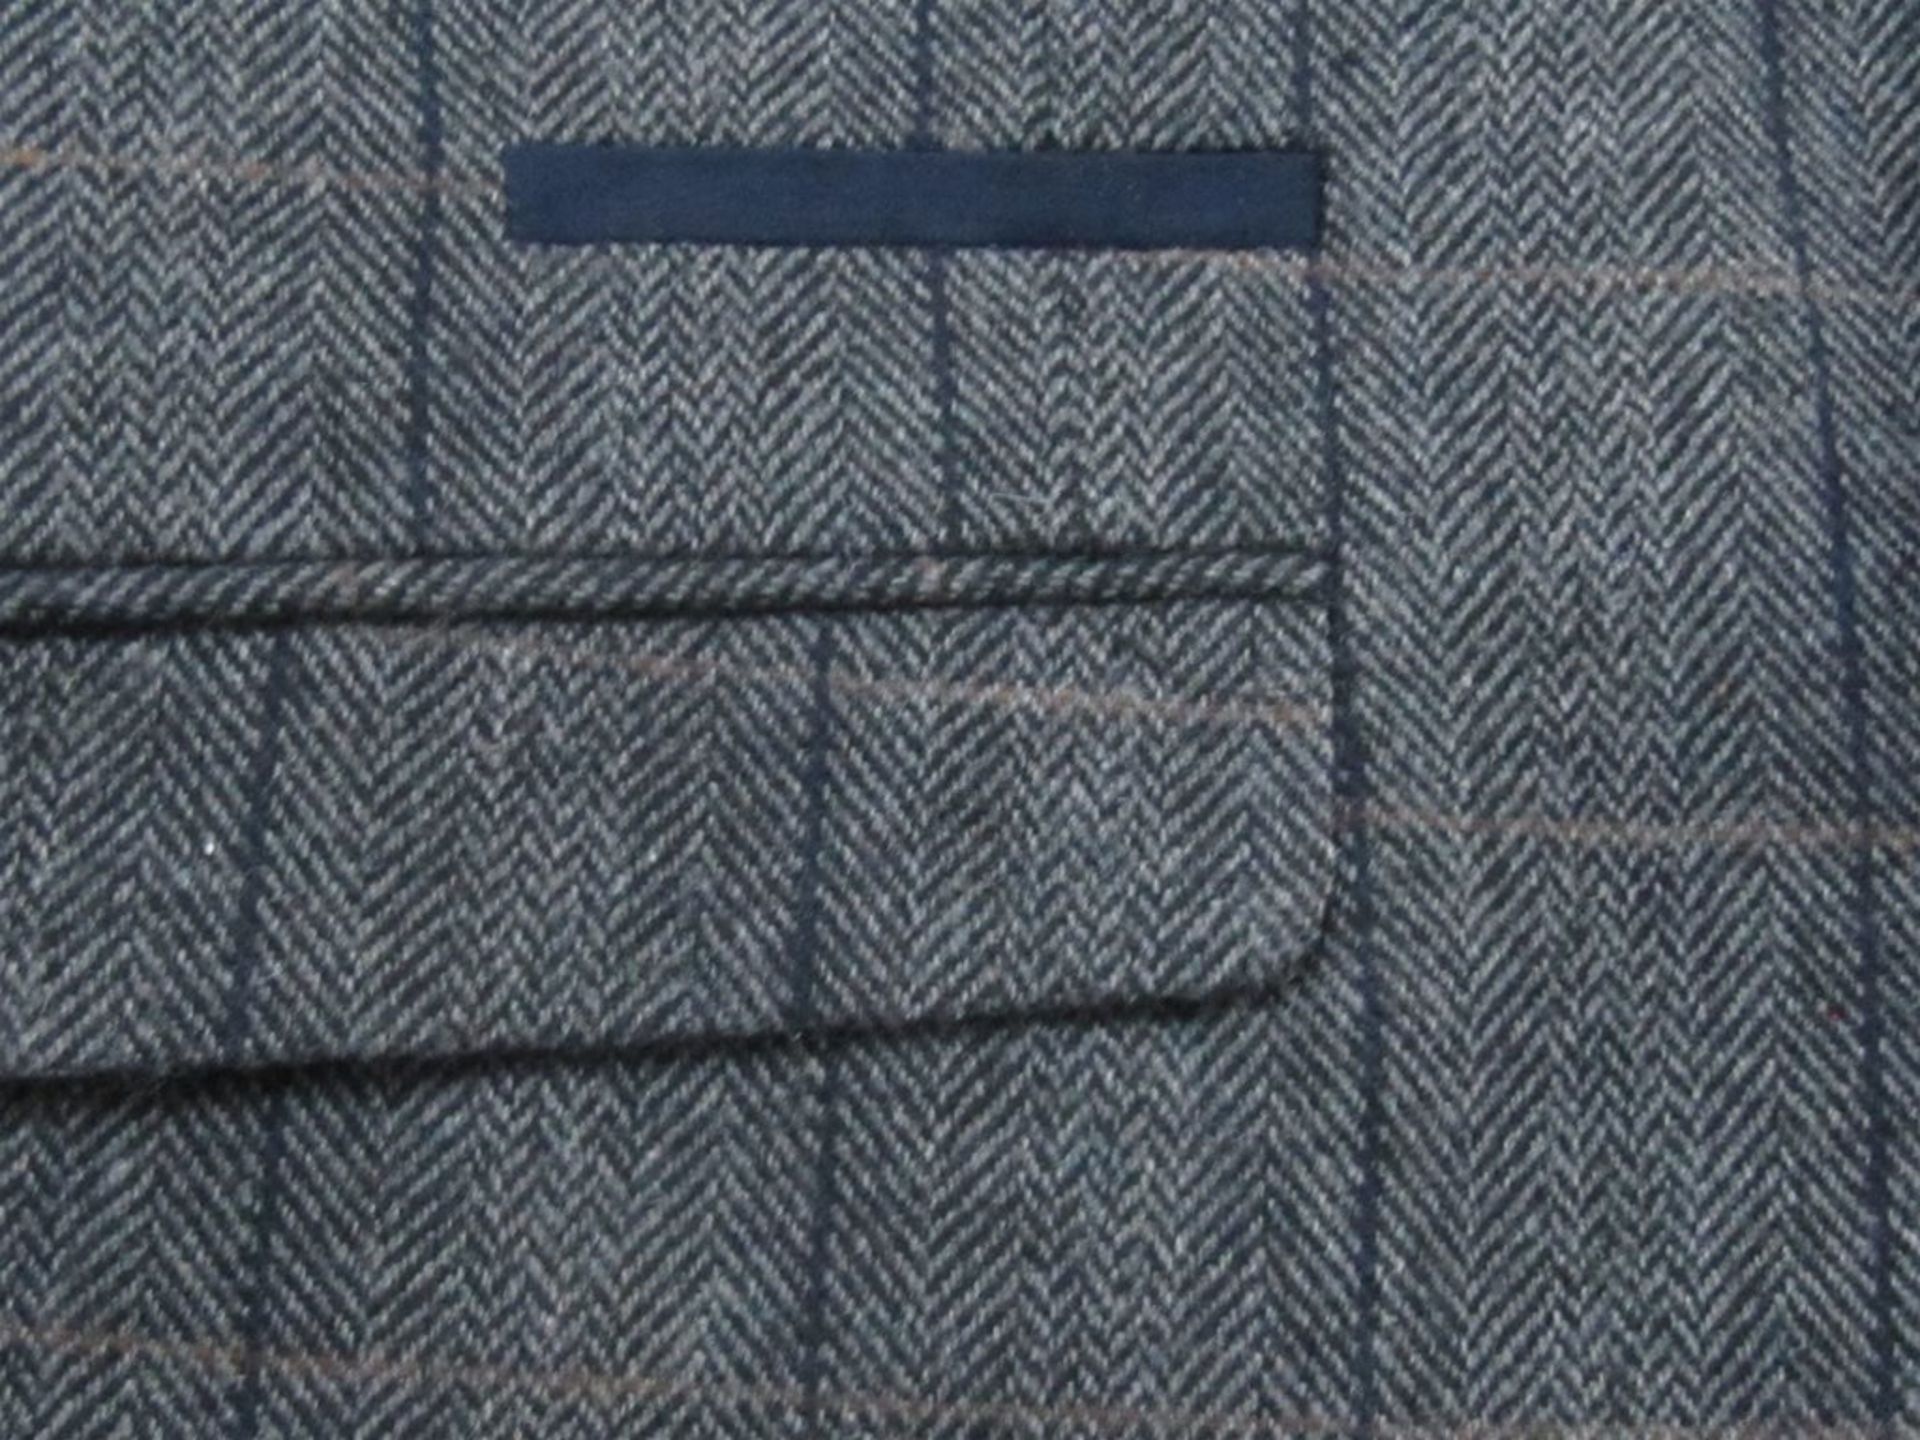 Mens 3 Piece Suit, Harris Tweed Style. 40" R. Free Shipping when you Win 2 Lots or more. - Image 2 of 6